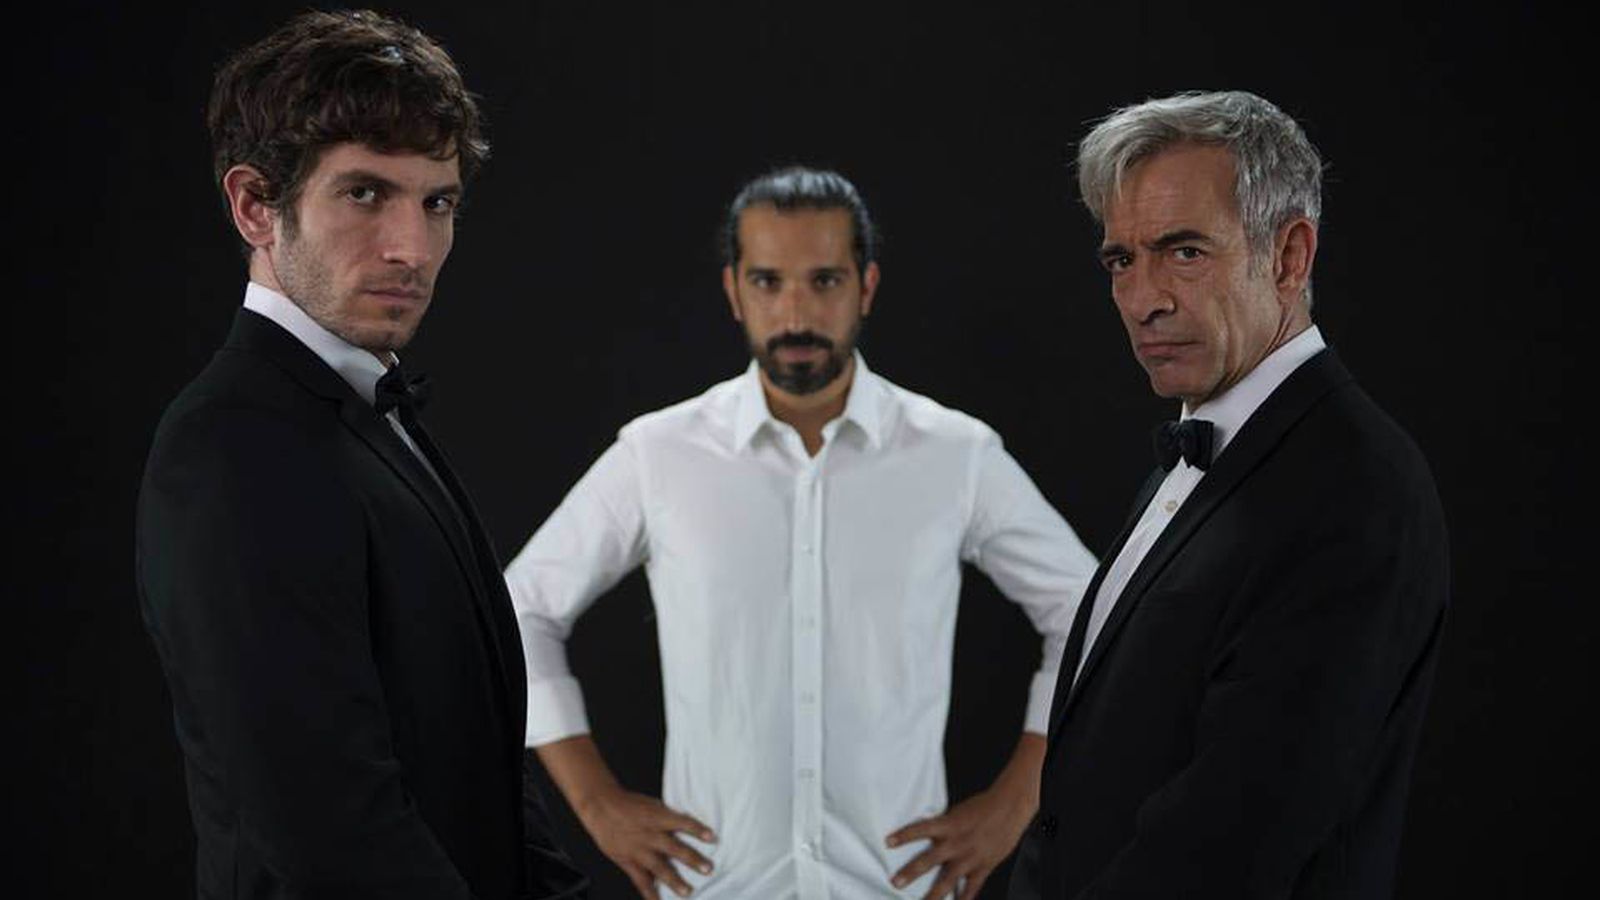 Foto: Quim Gutiérrez, Javier Ruiz Caldera e Imanol Arias en una imagen promocional del filme